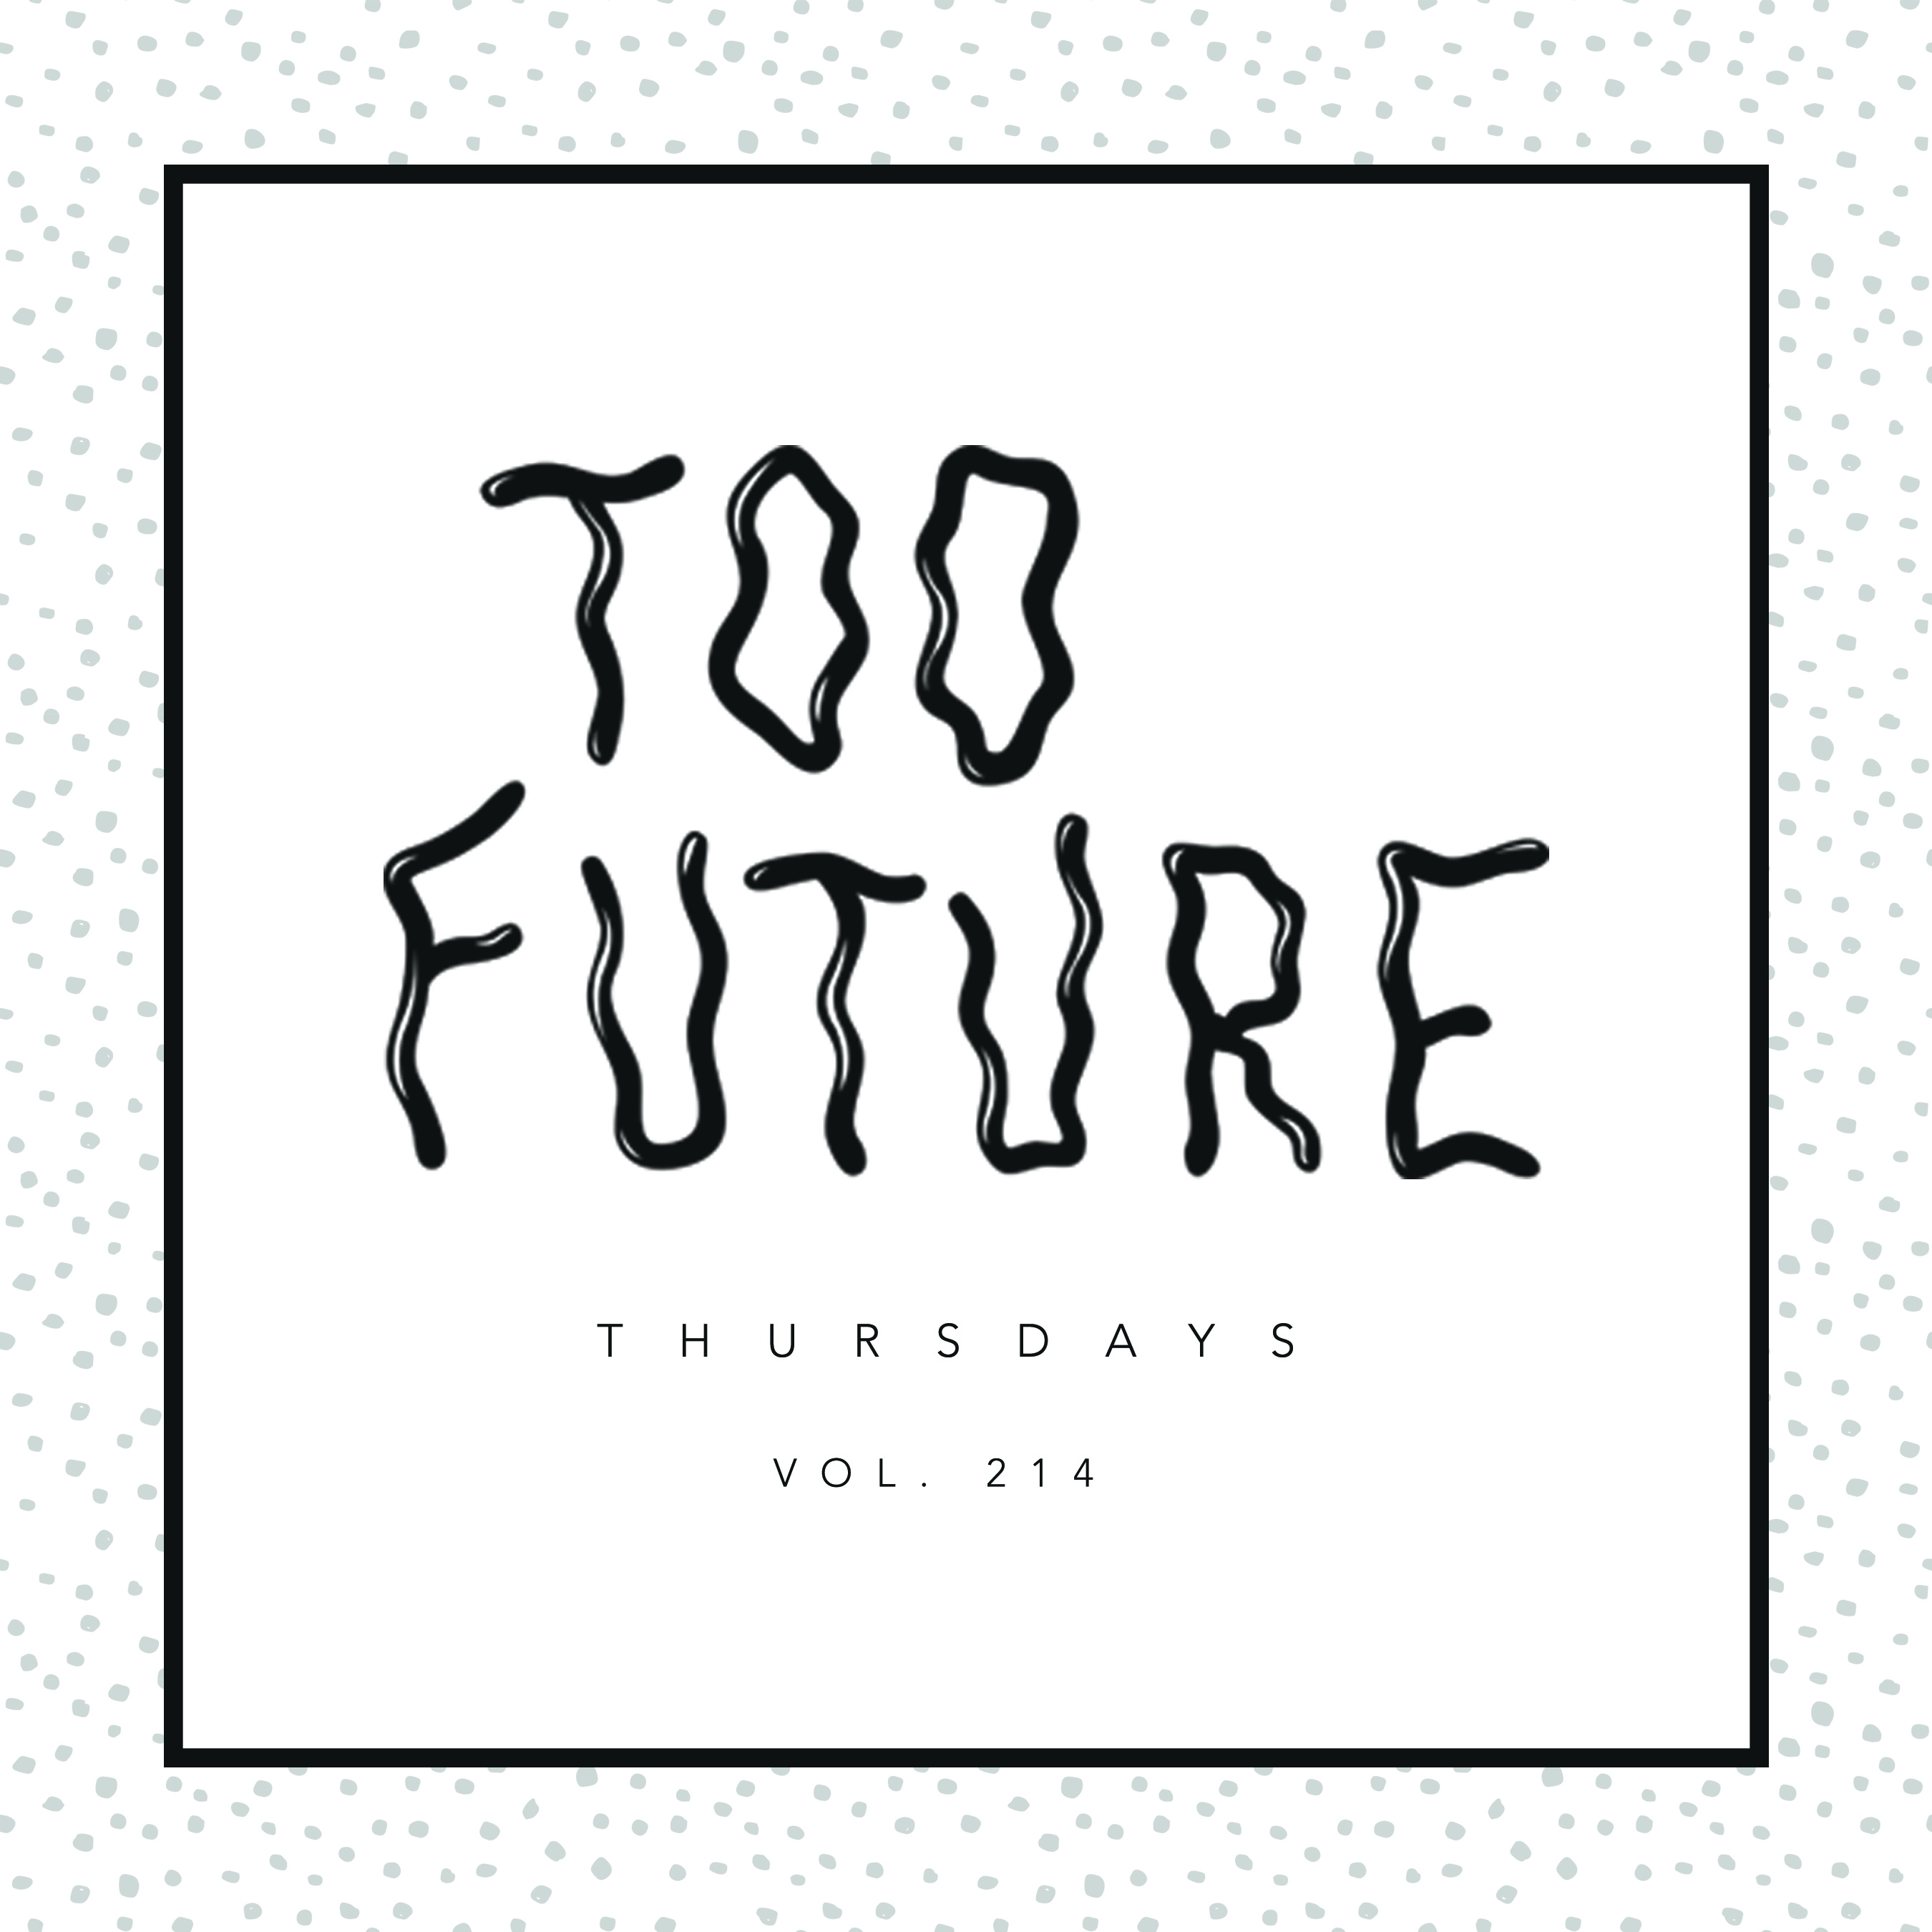 too-future-thursdays-vol-214